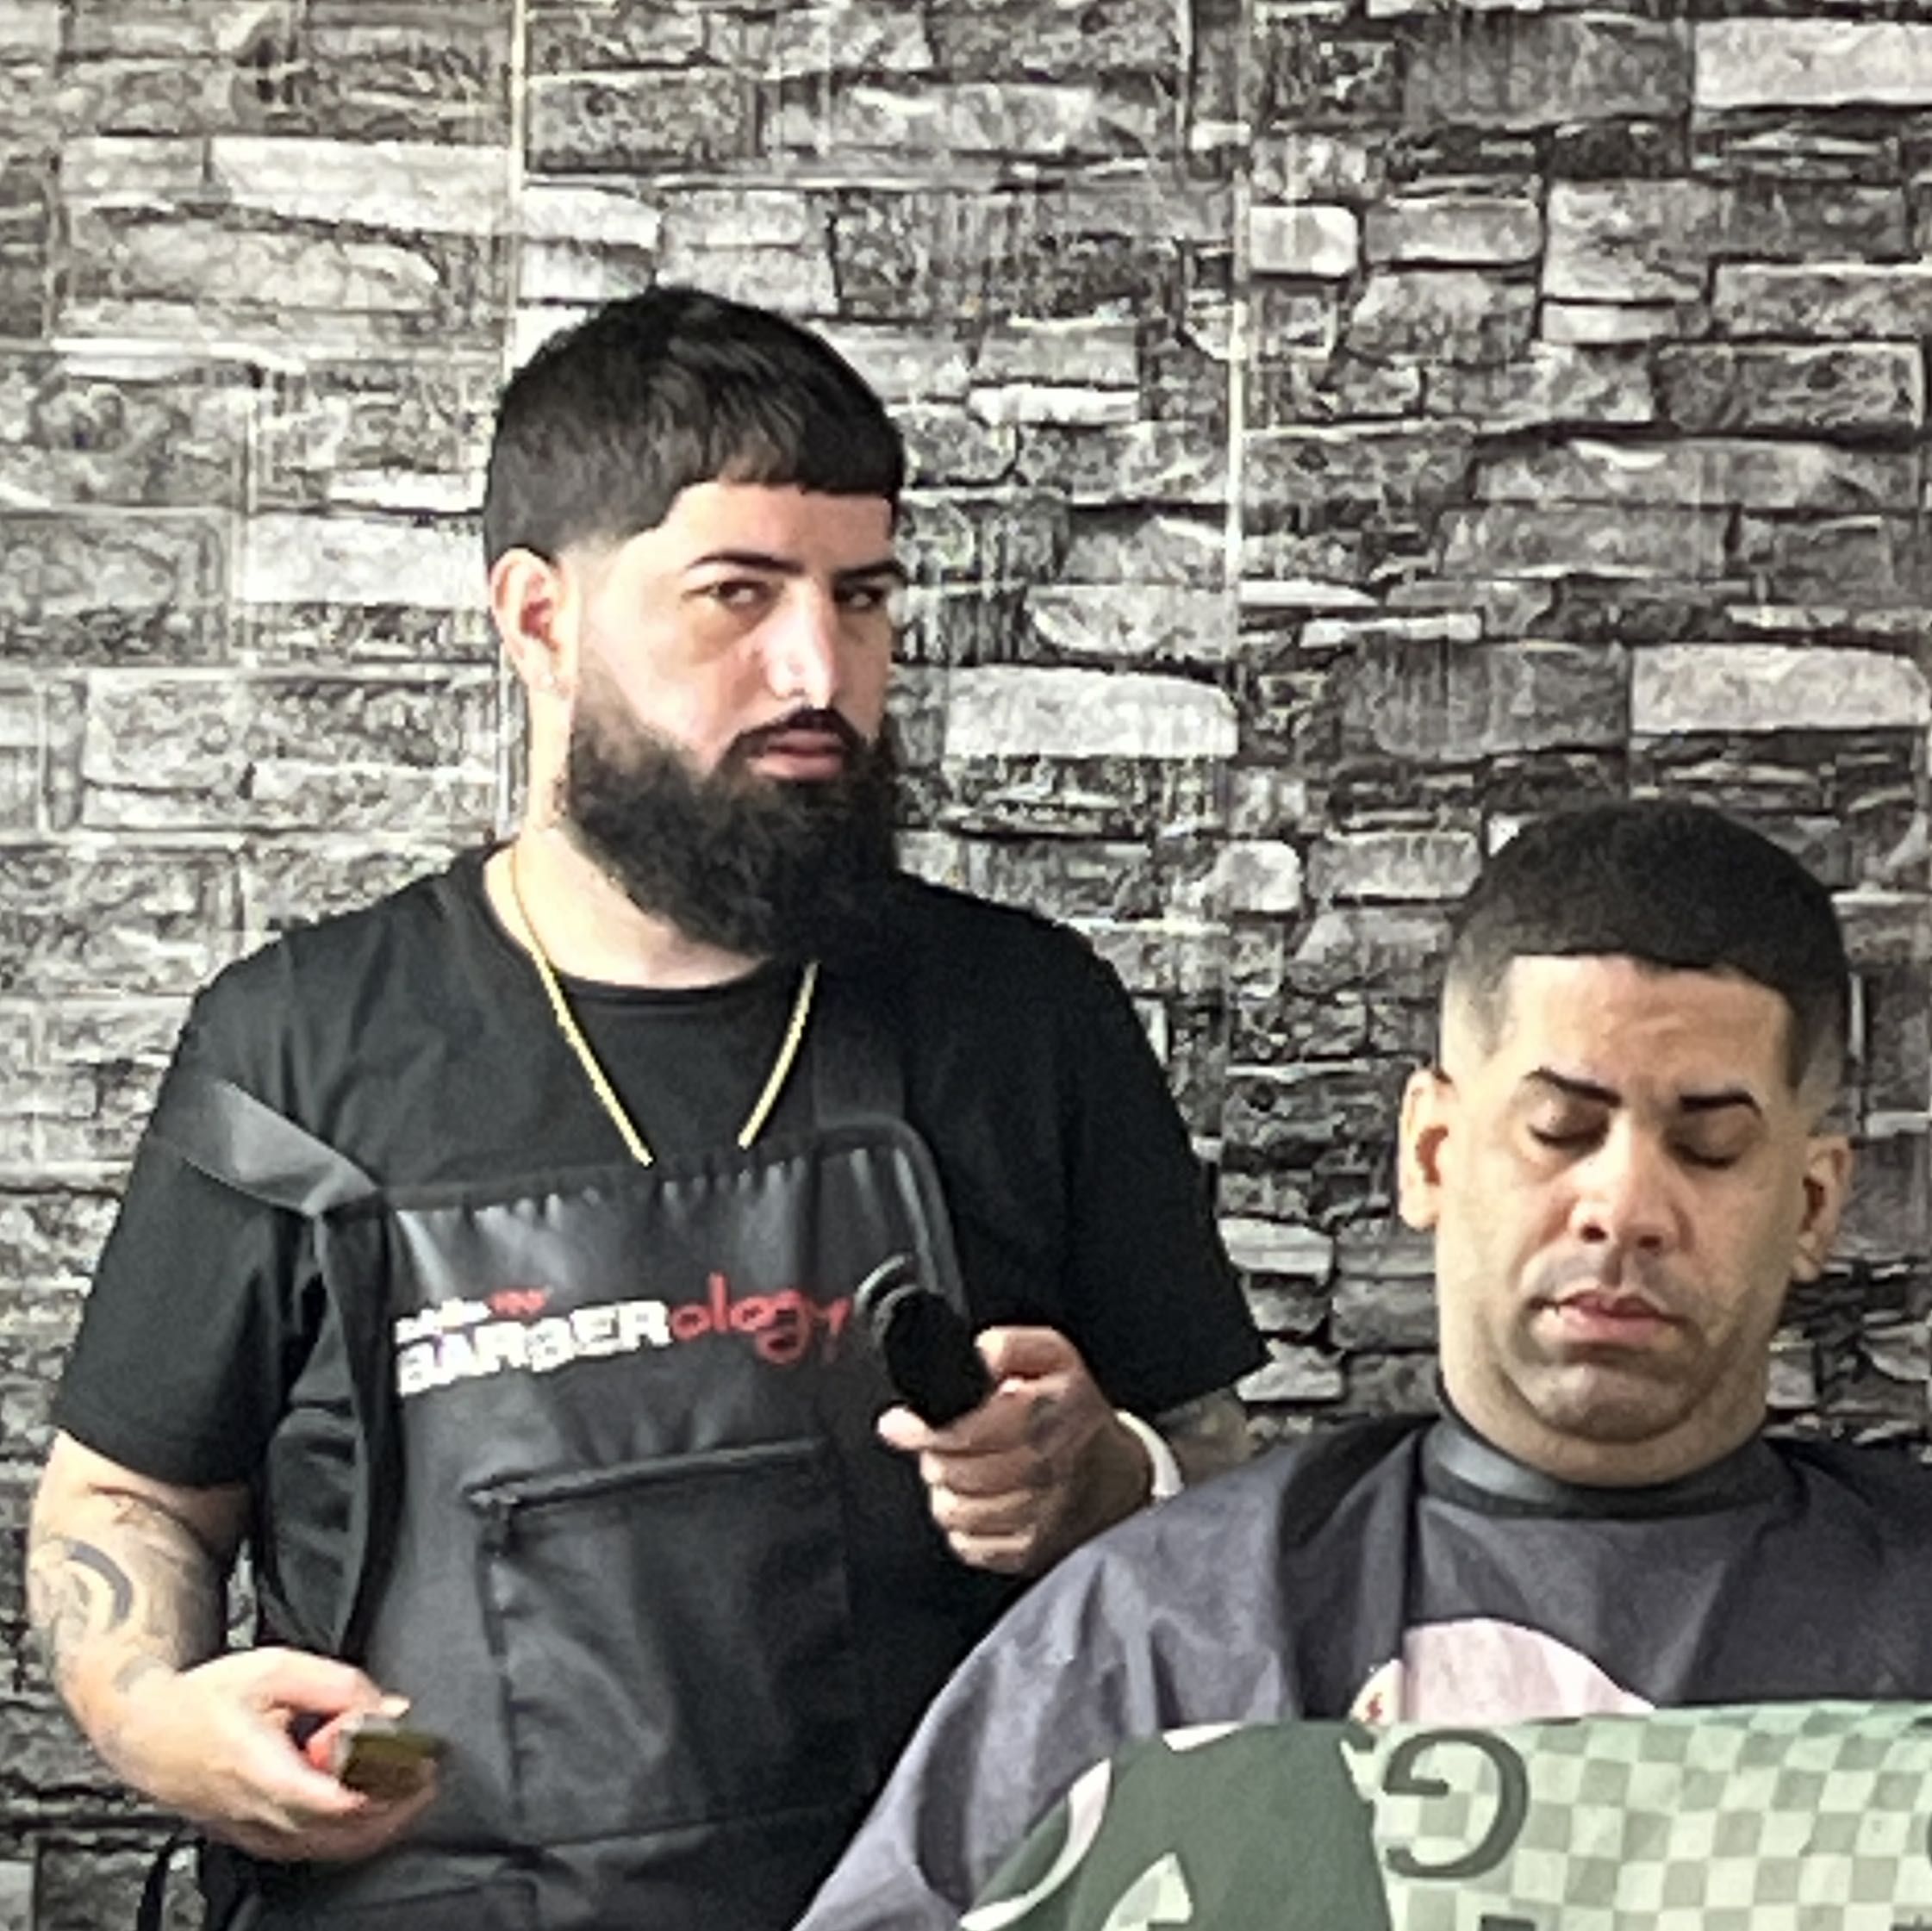 Mario Flores - Rolling Hills Barber Shop